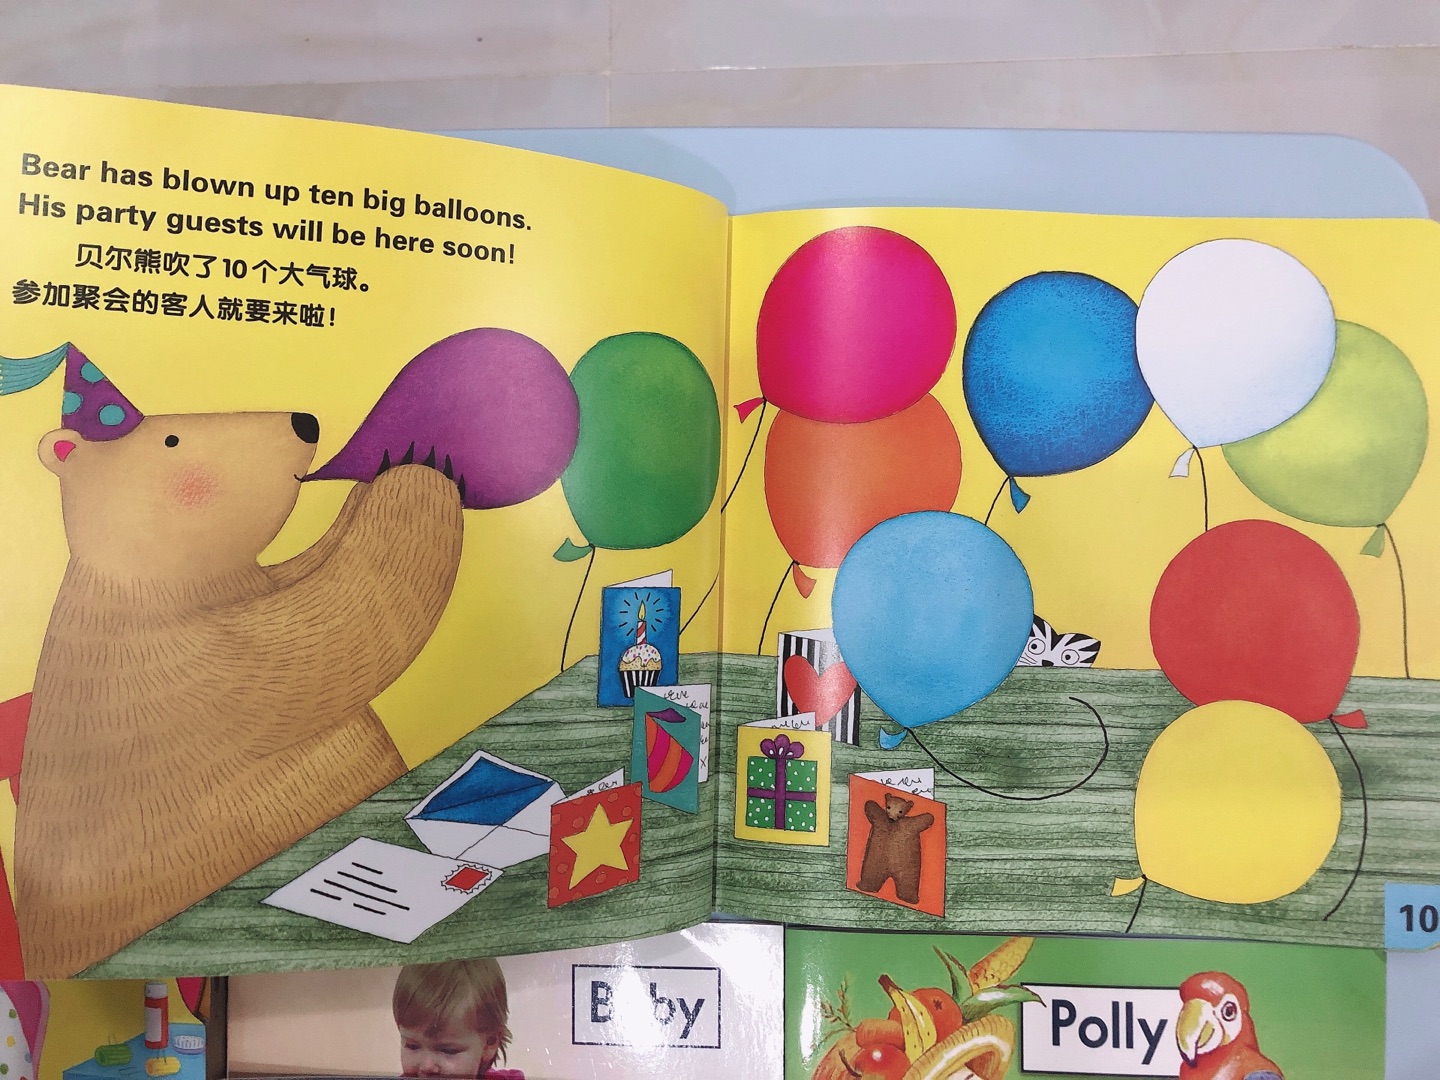 内页美极了，不管是作为英语启蒙还是中文故事还是作为低幼的色彩启蒙书都是非常非常合适的。